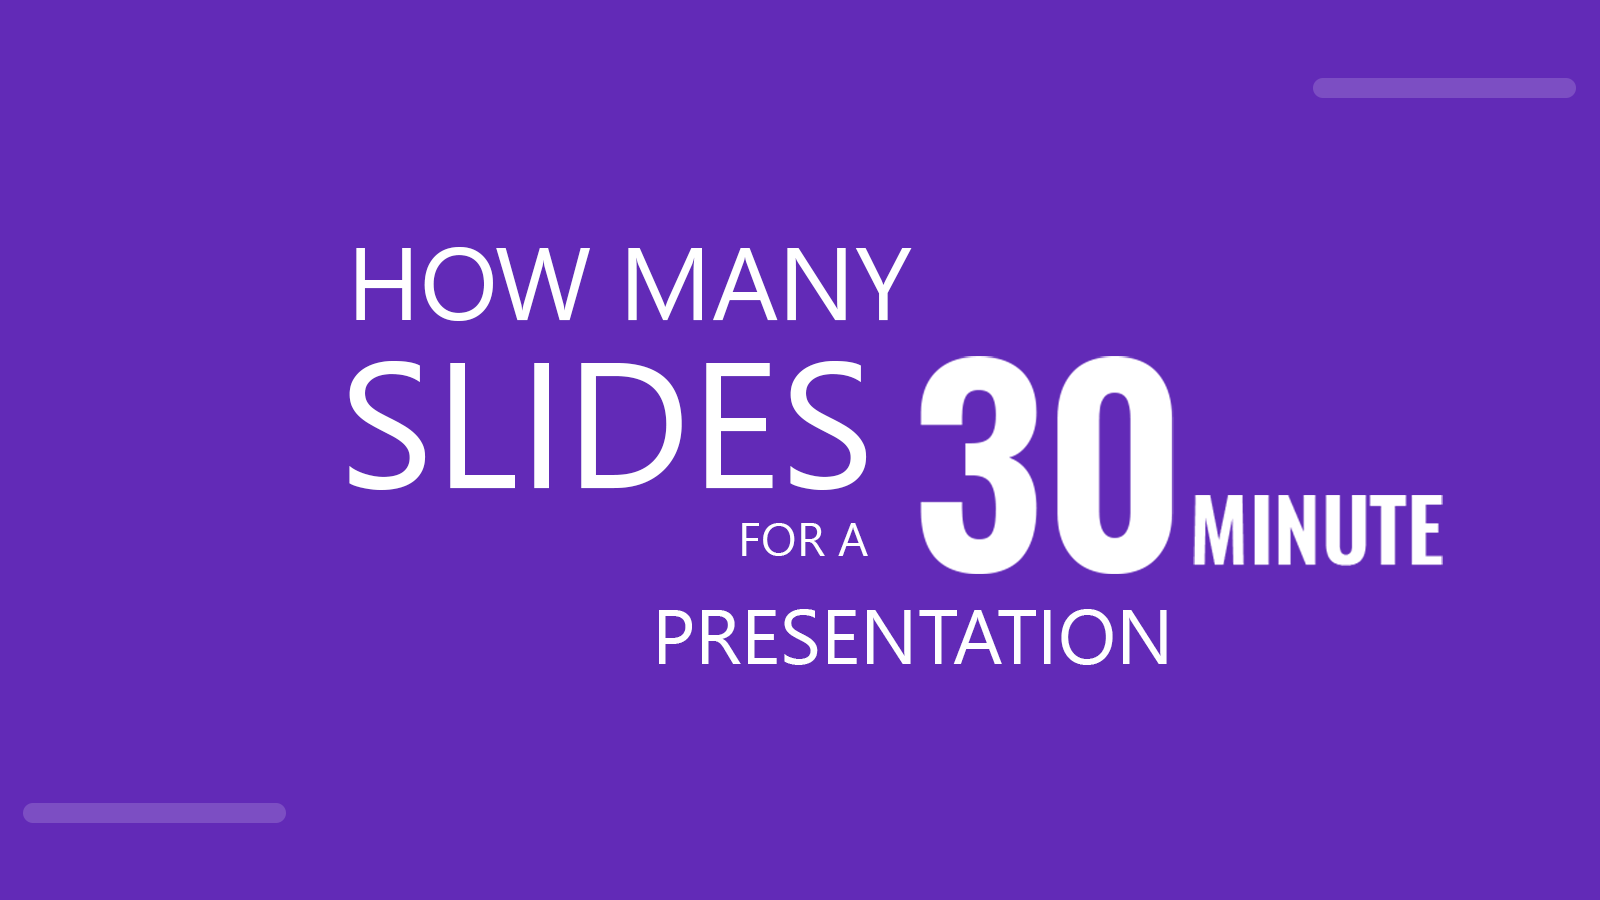 slides for 30 minute presentation